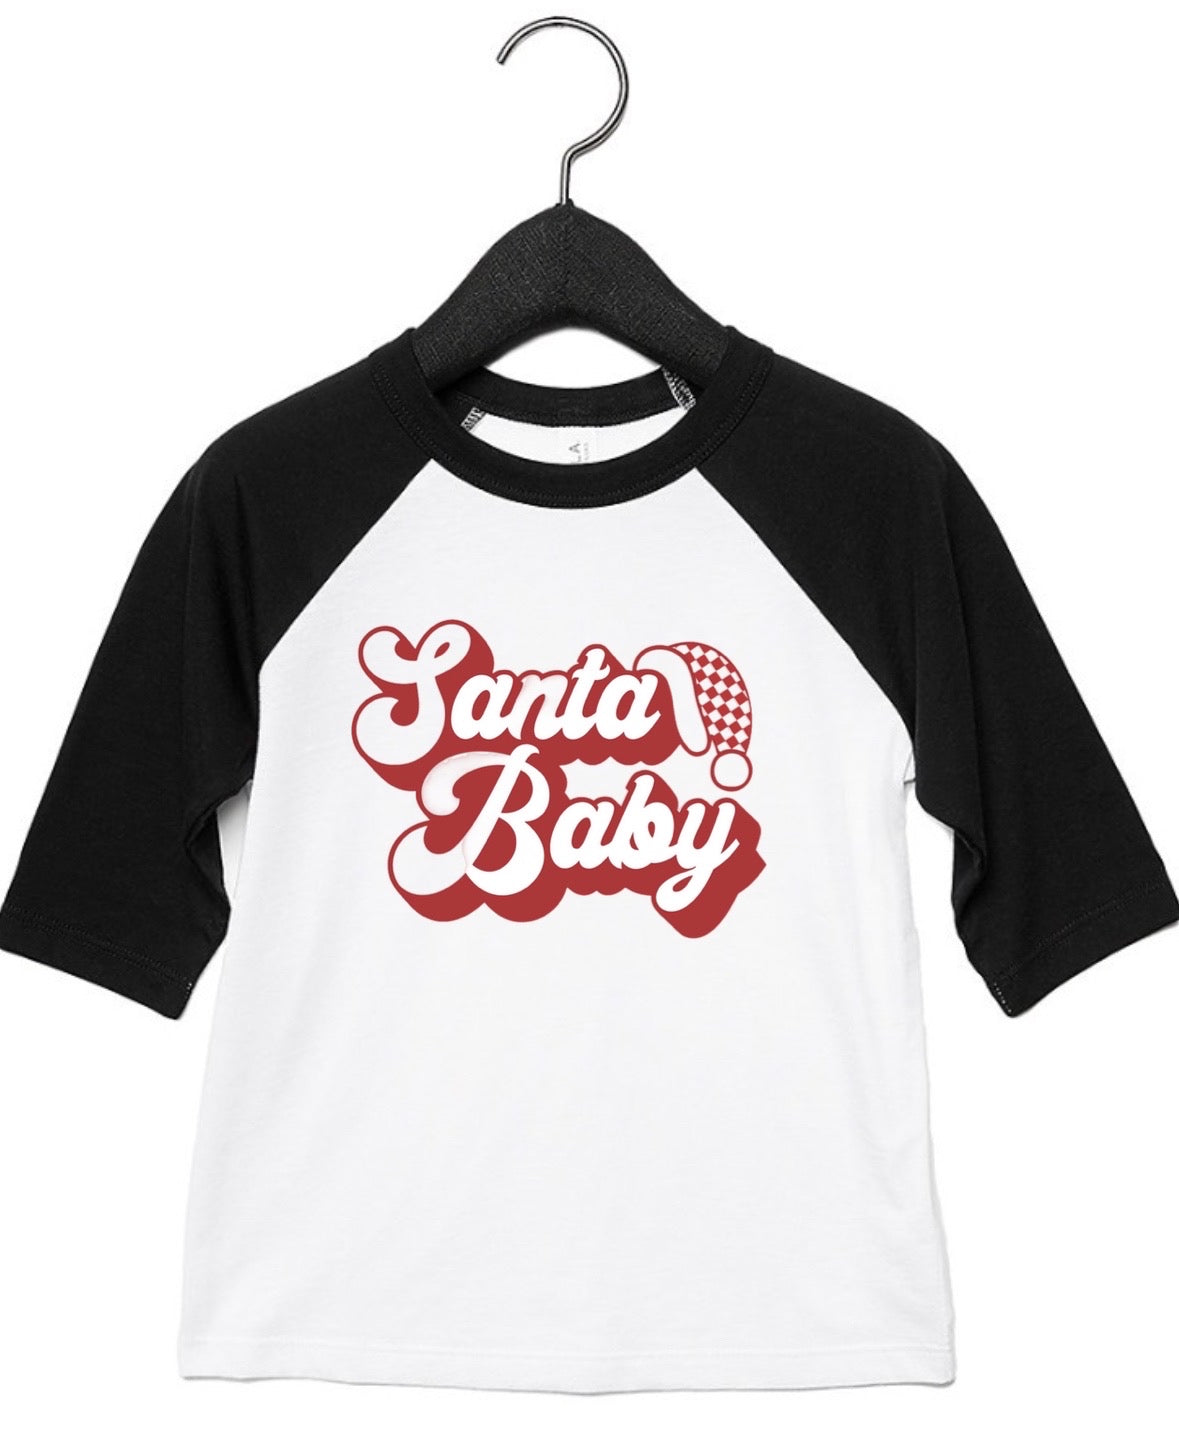 Santa Baby Baseball 3/4 Sleeve Tee on